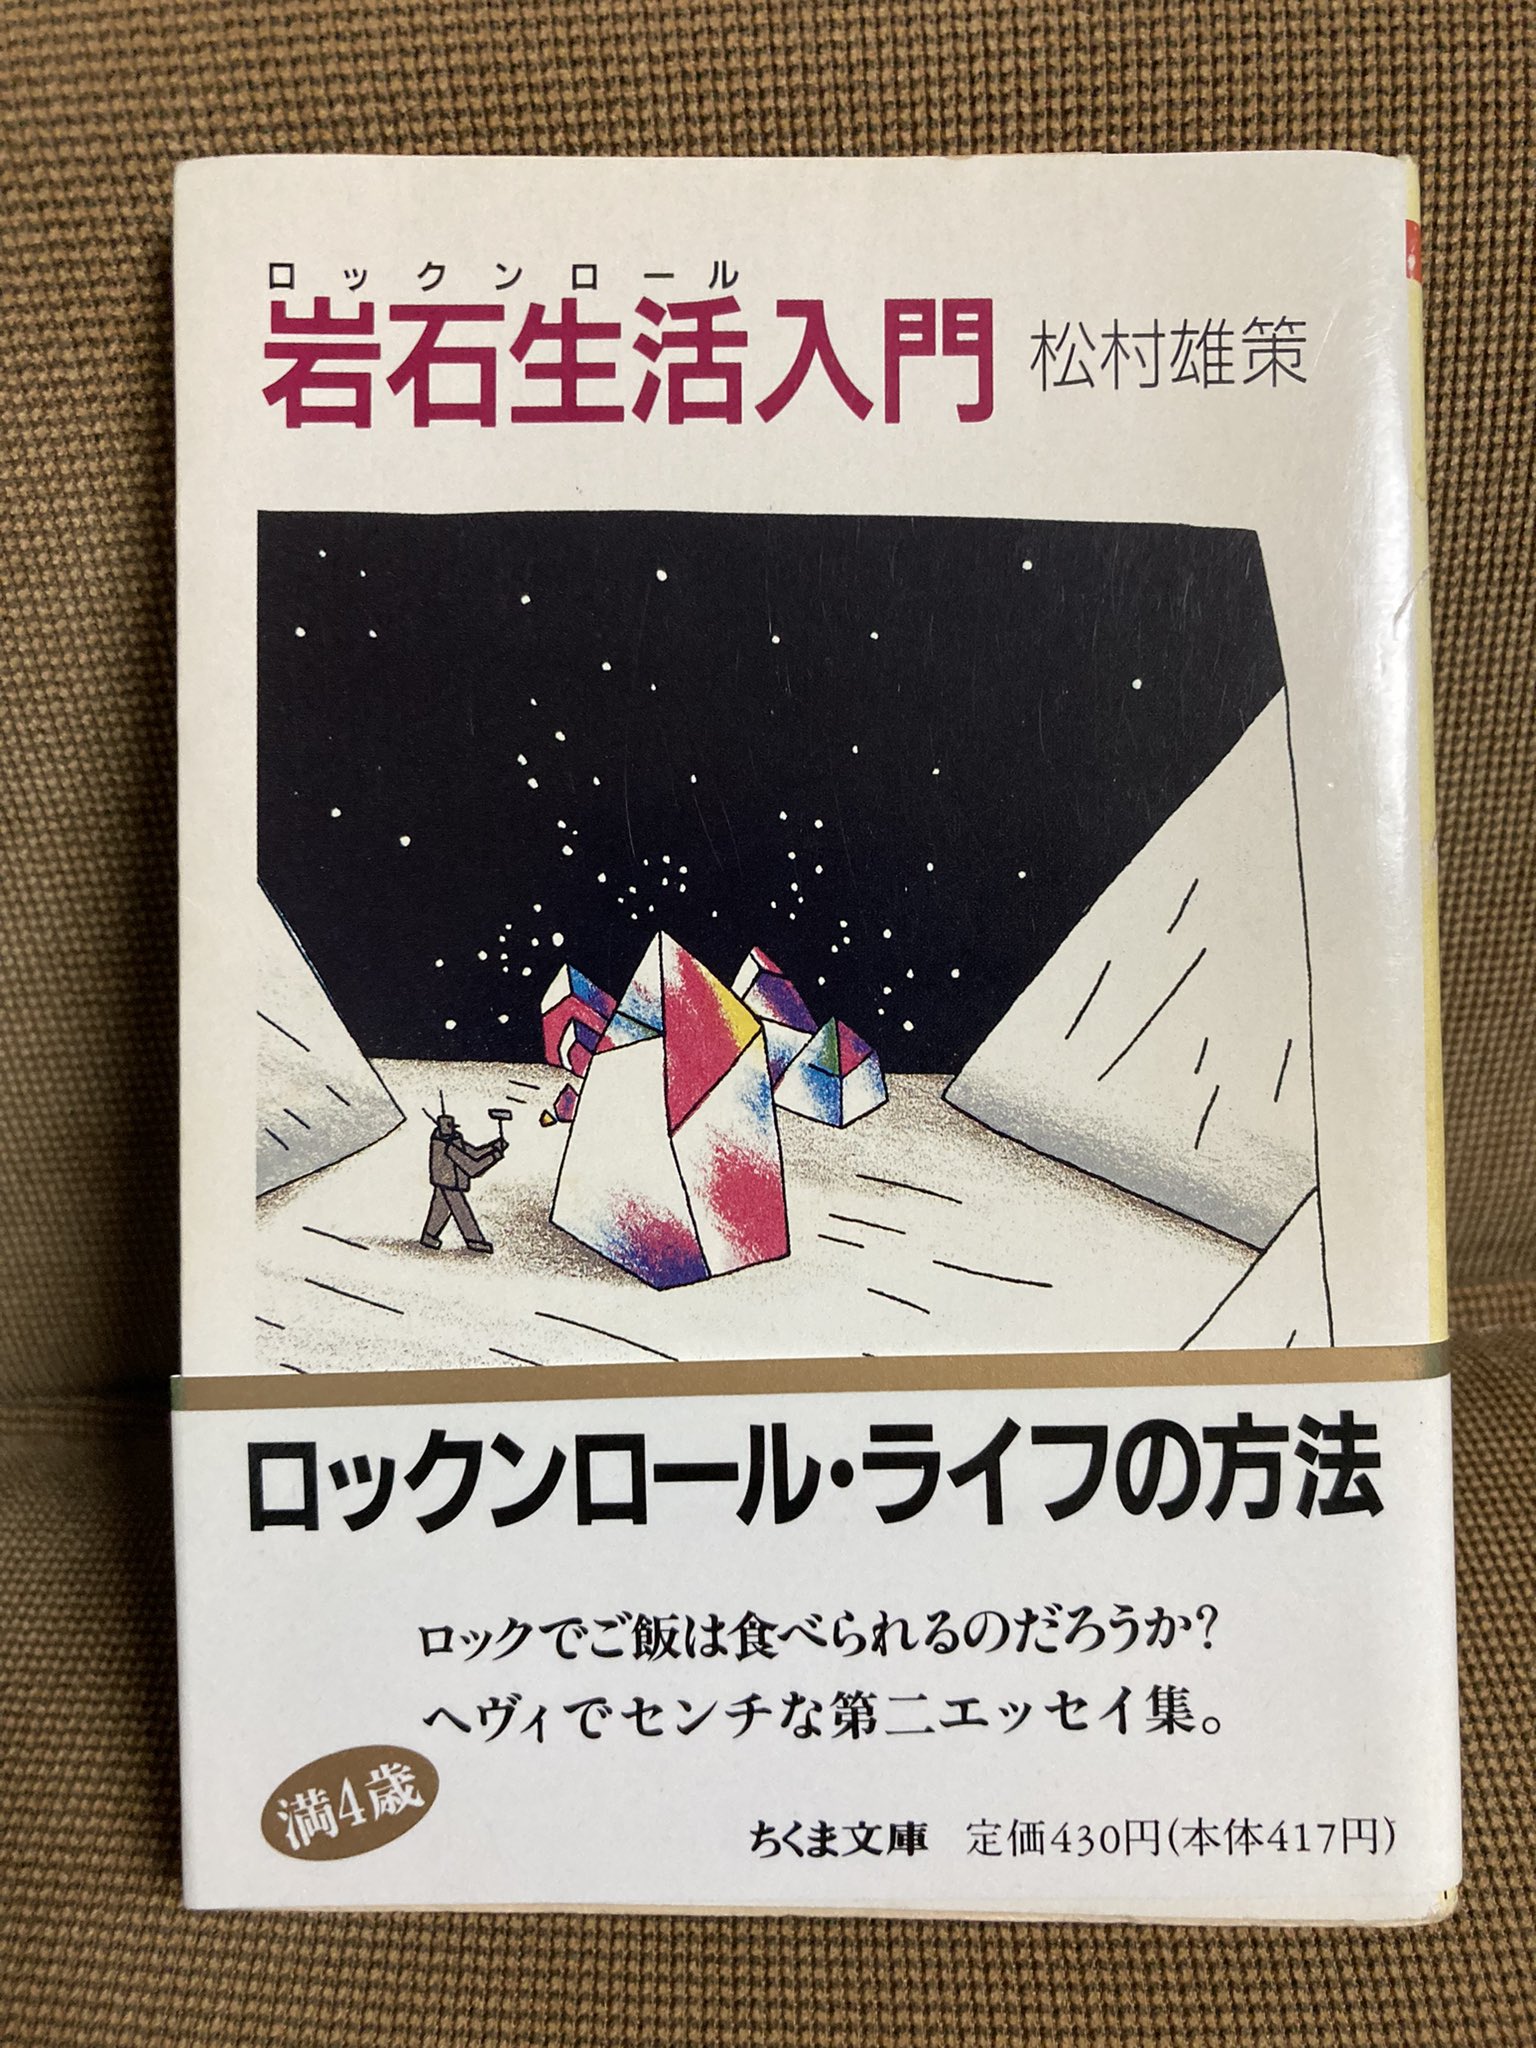 Ryusei On Twitter 松村雄策さんの一番好きな本、「岩石生活入門」を読みながらポールマッカートニーのタッグオブウォー、ああ